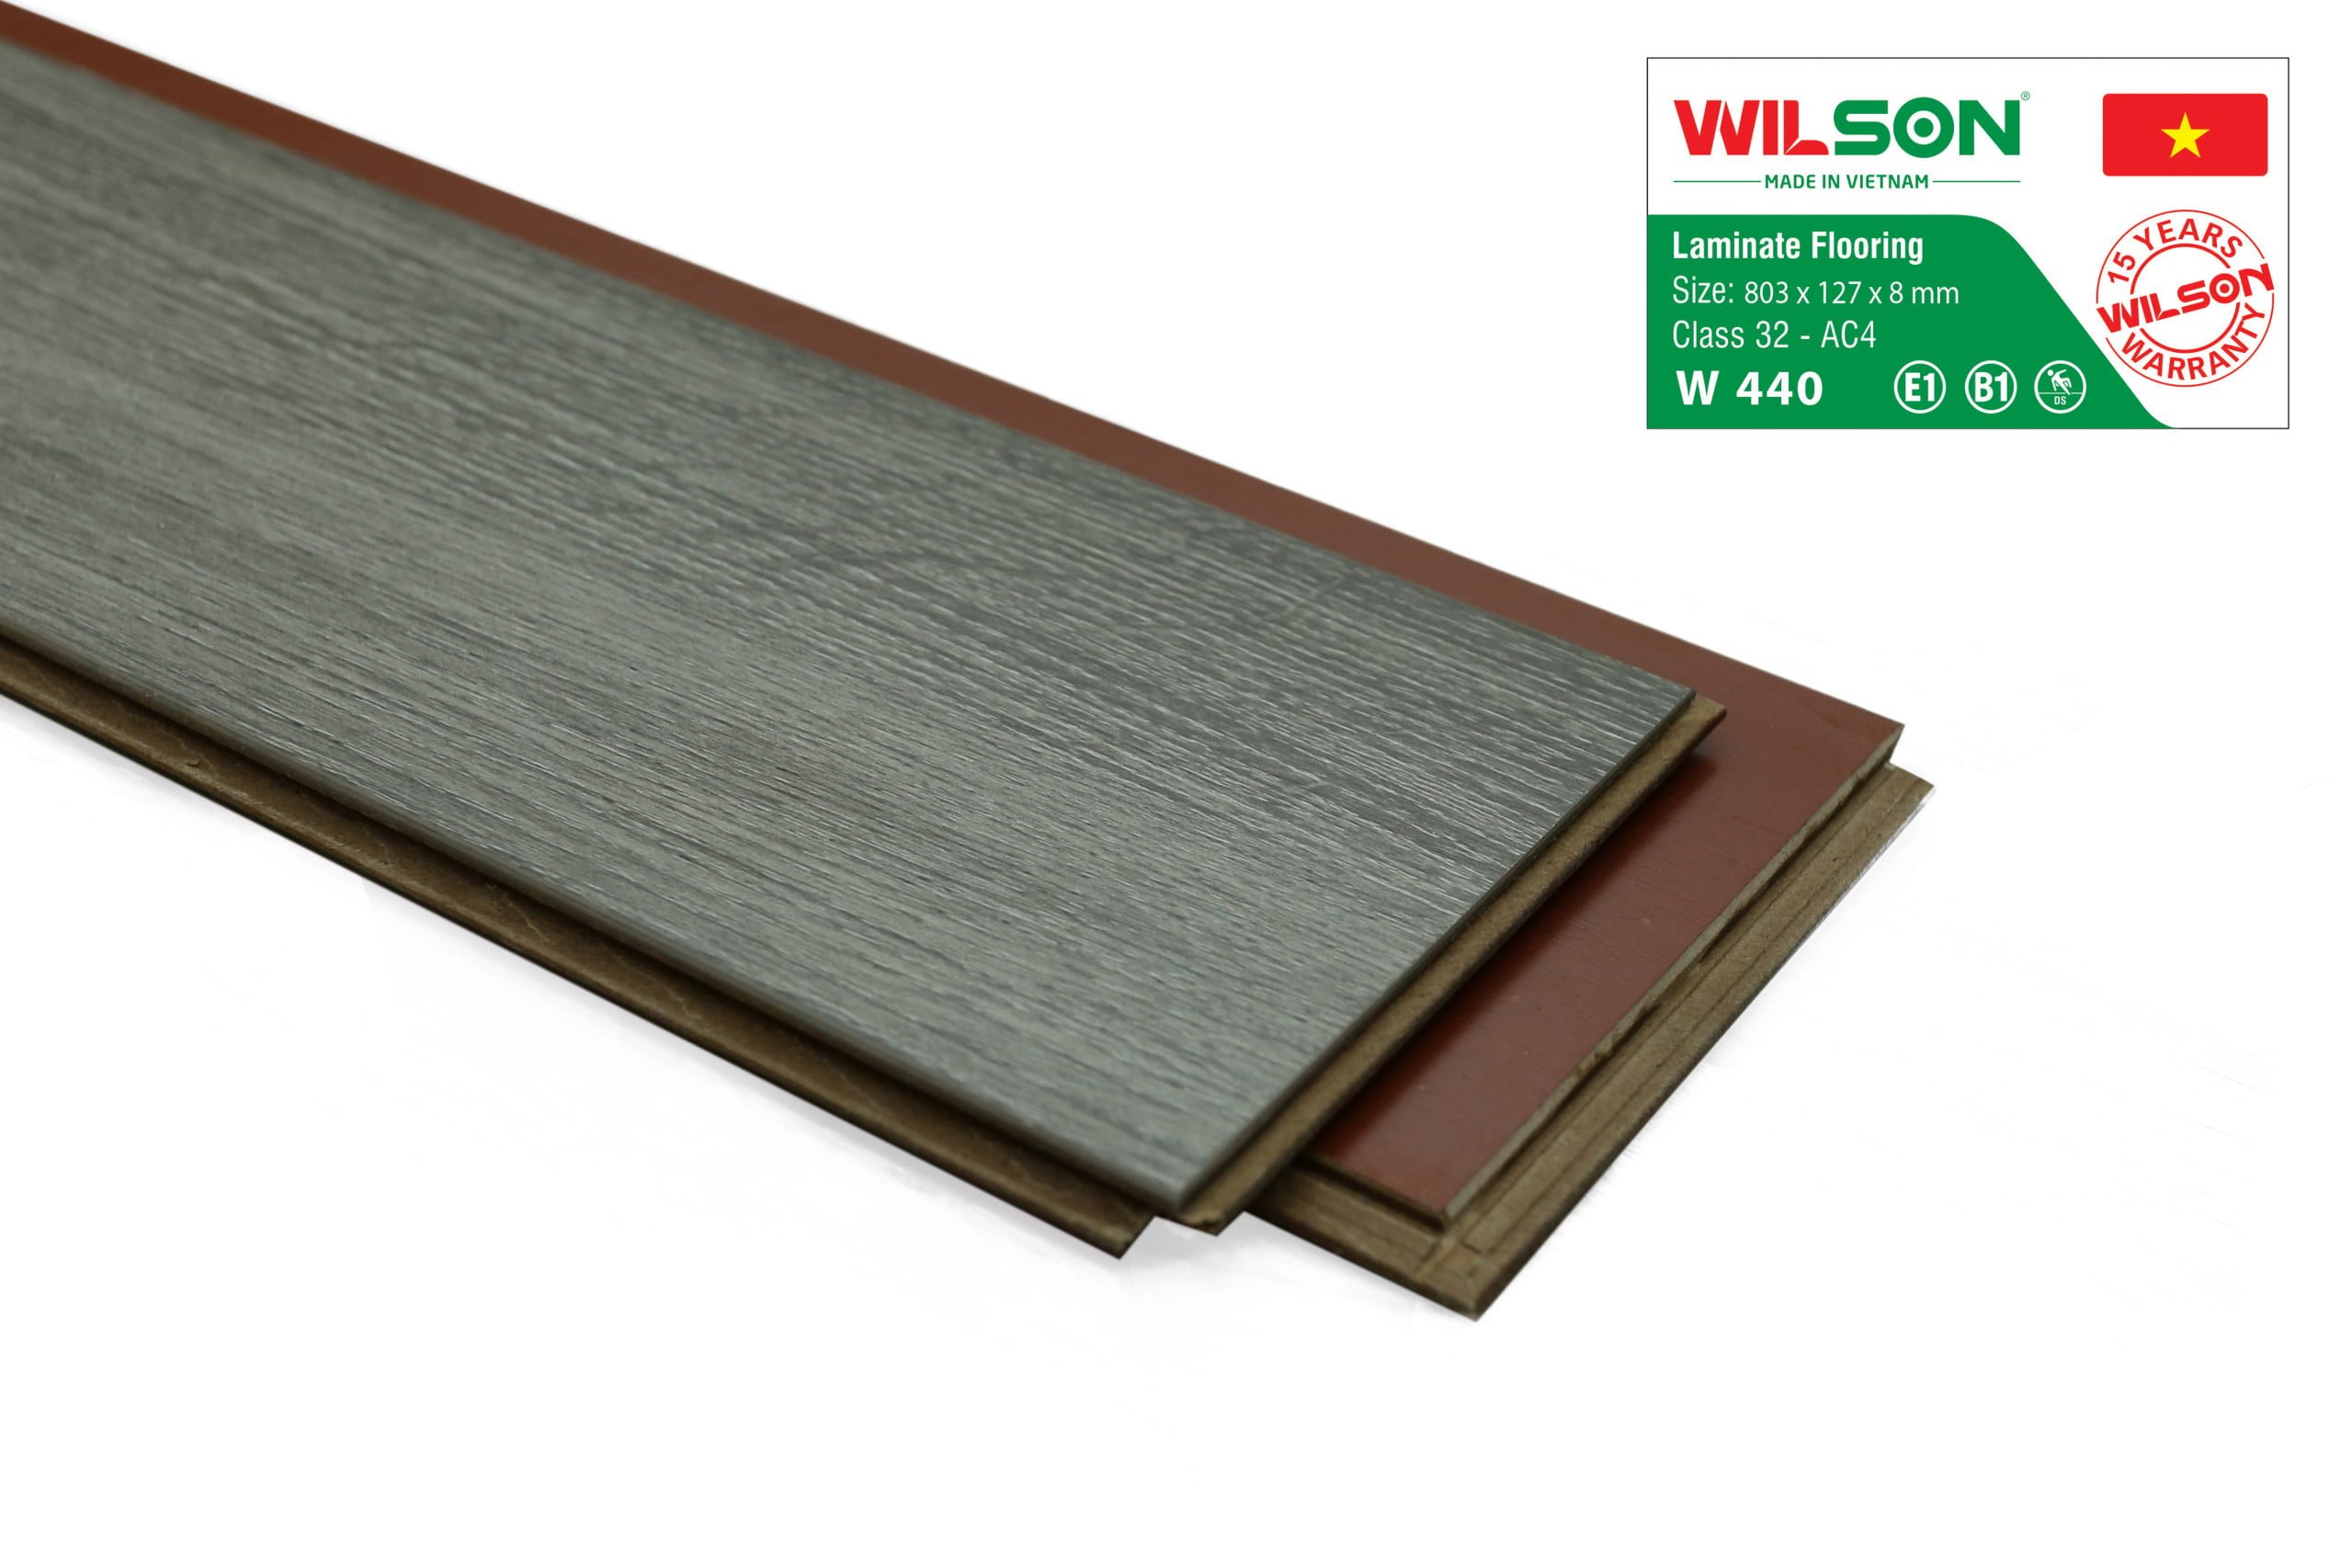 sàn gỗ wilson w440 tại tổng kho sàn gỗ an pha